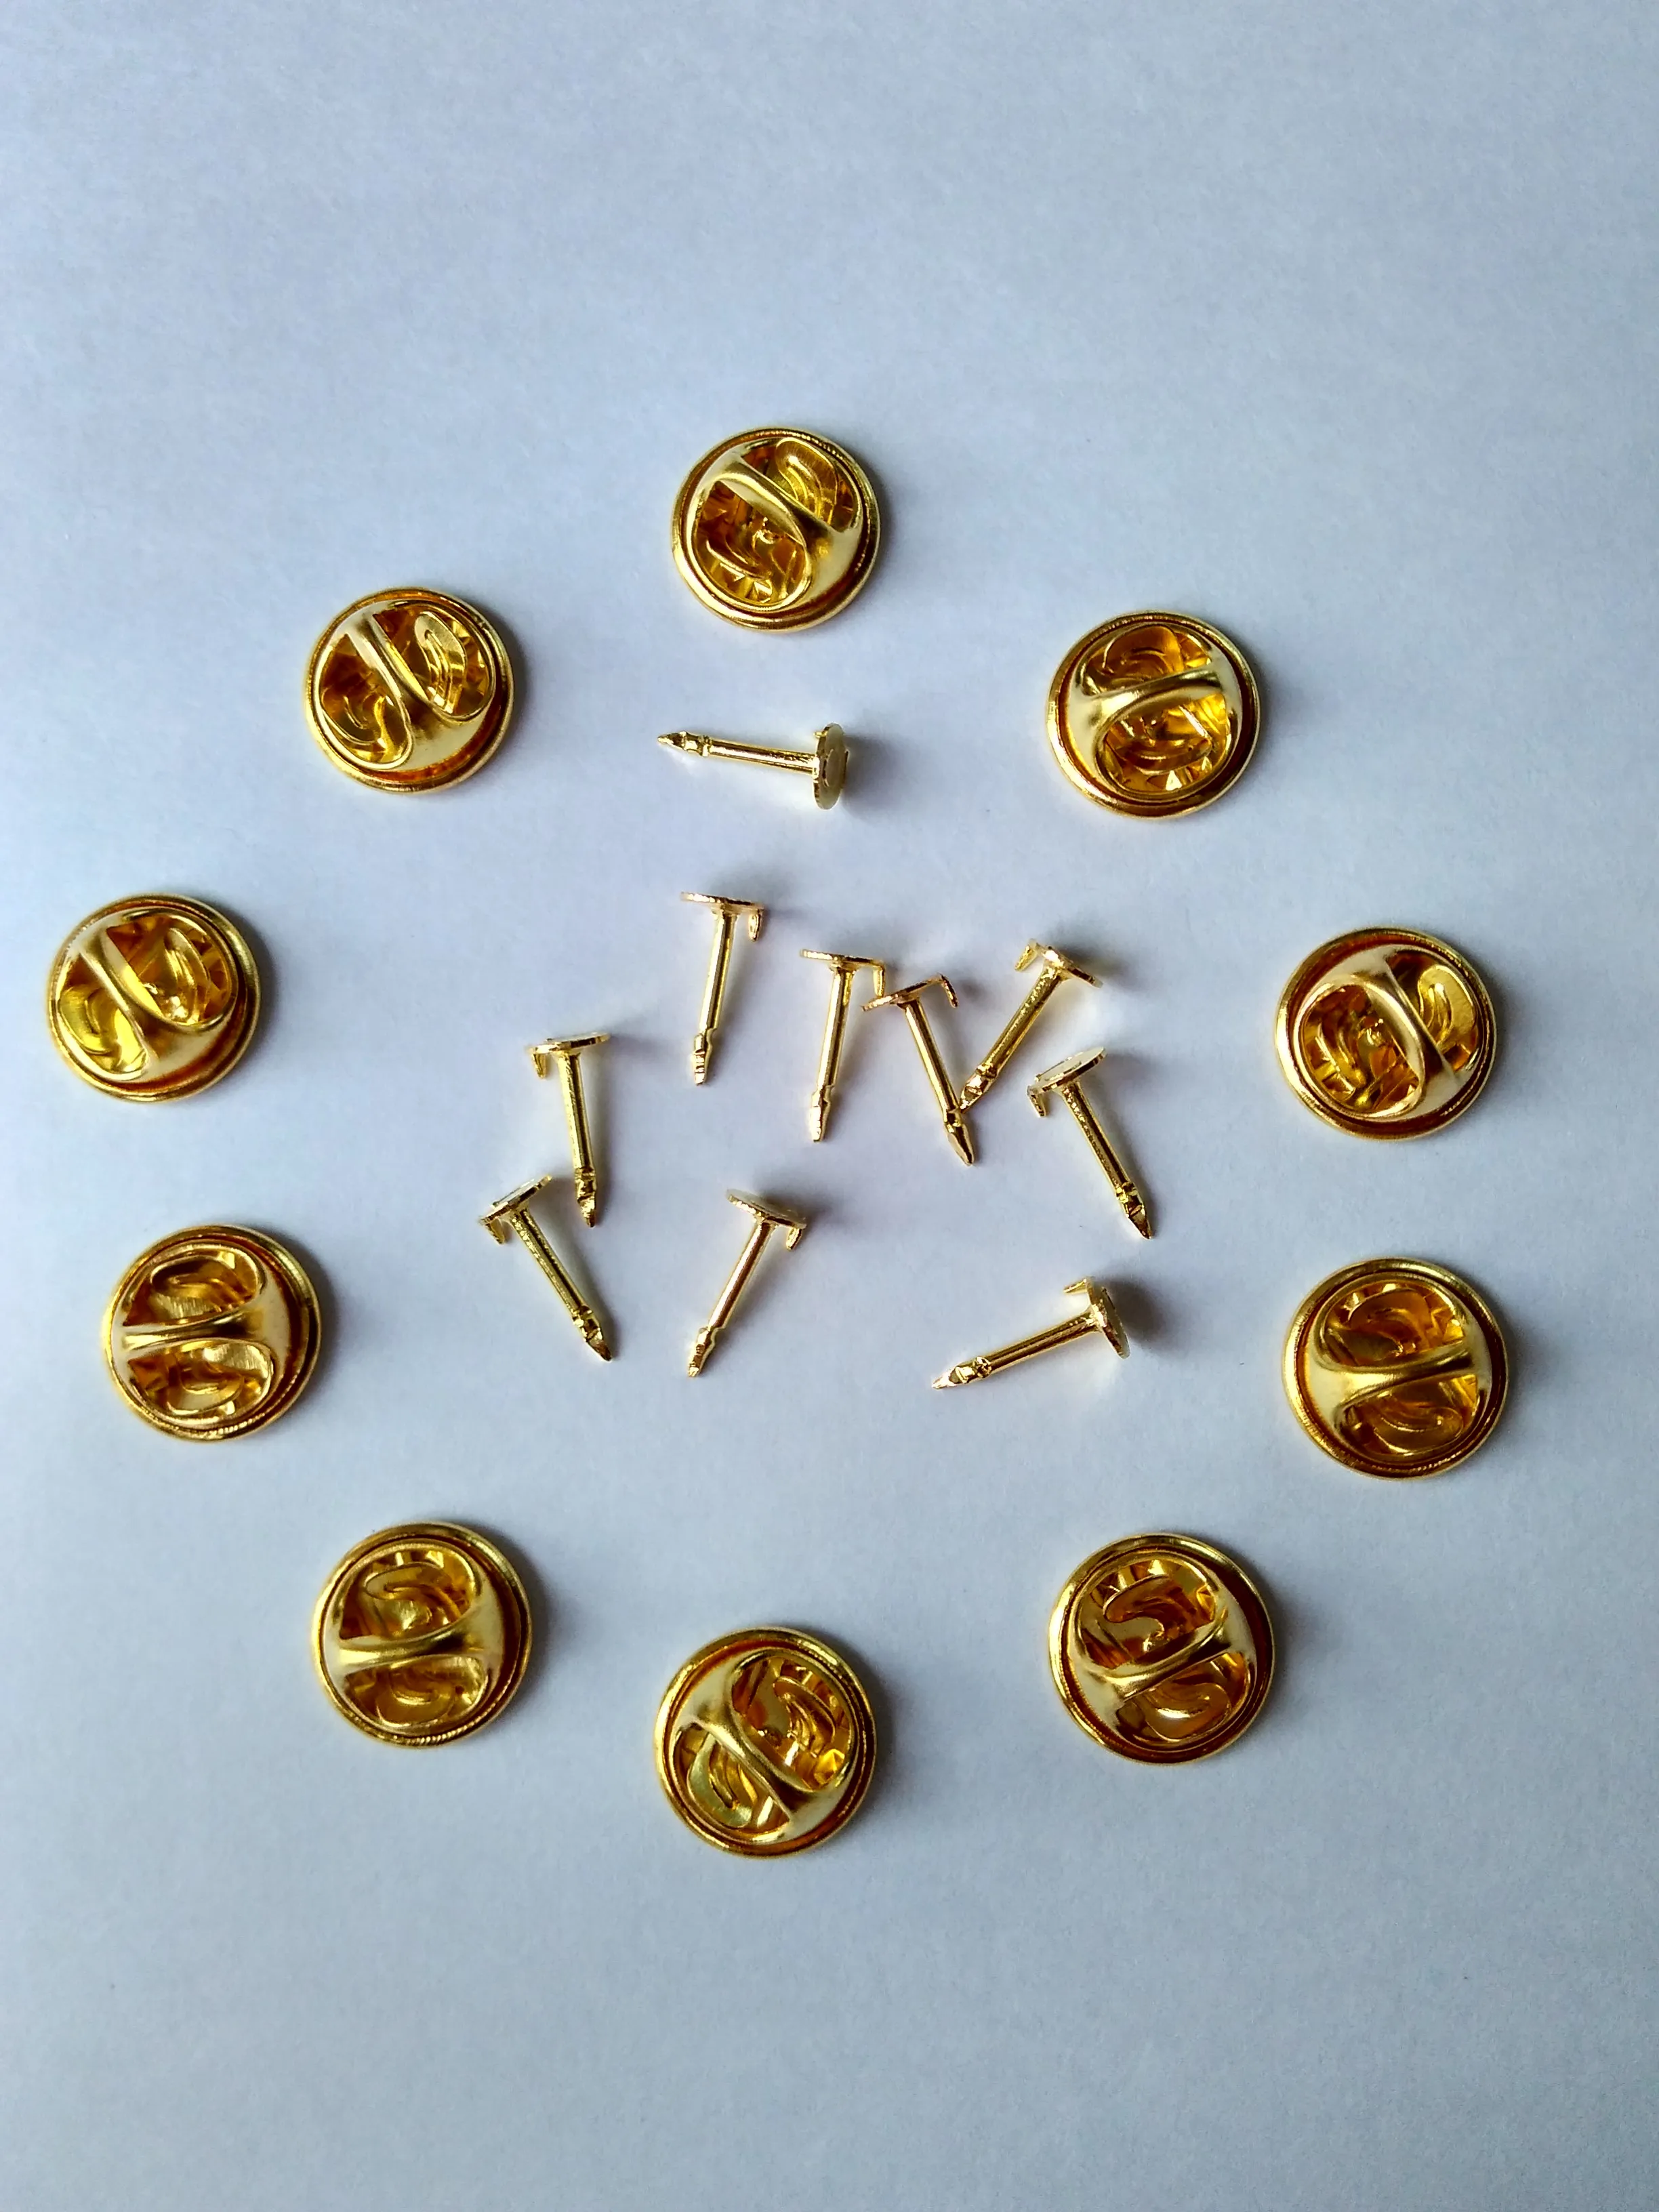 10mm post nagels sluiting goud zilver messing stropdas kopspijkers tacs vlinder pin badge revers terug koppeling voor kleding sieraden bevindingen broches1635